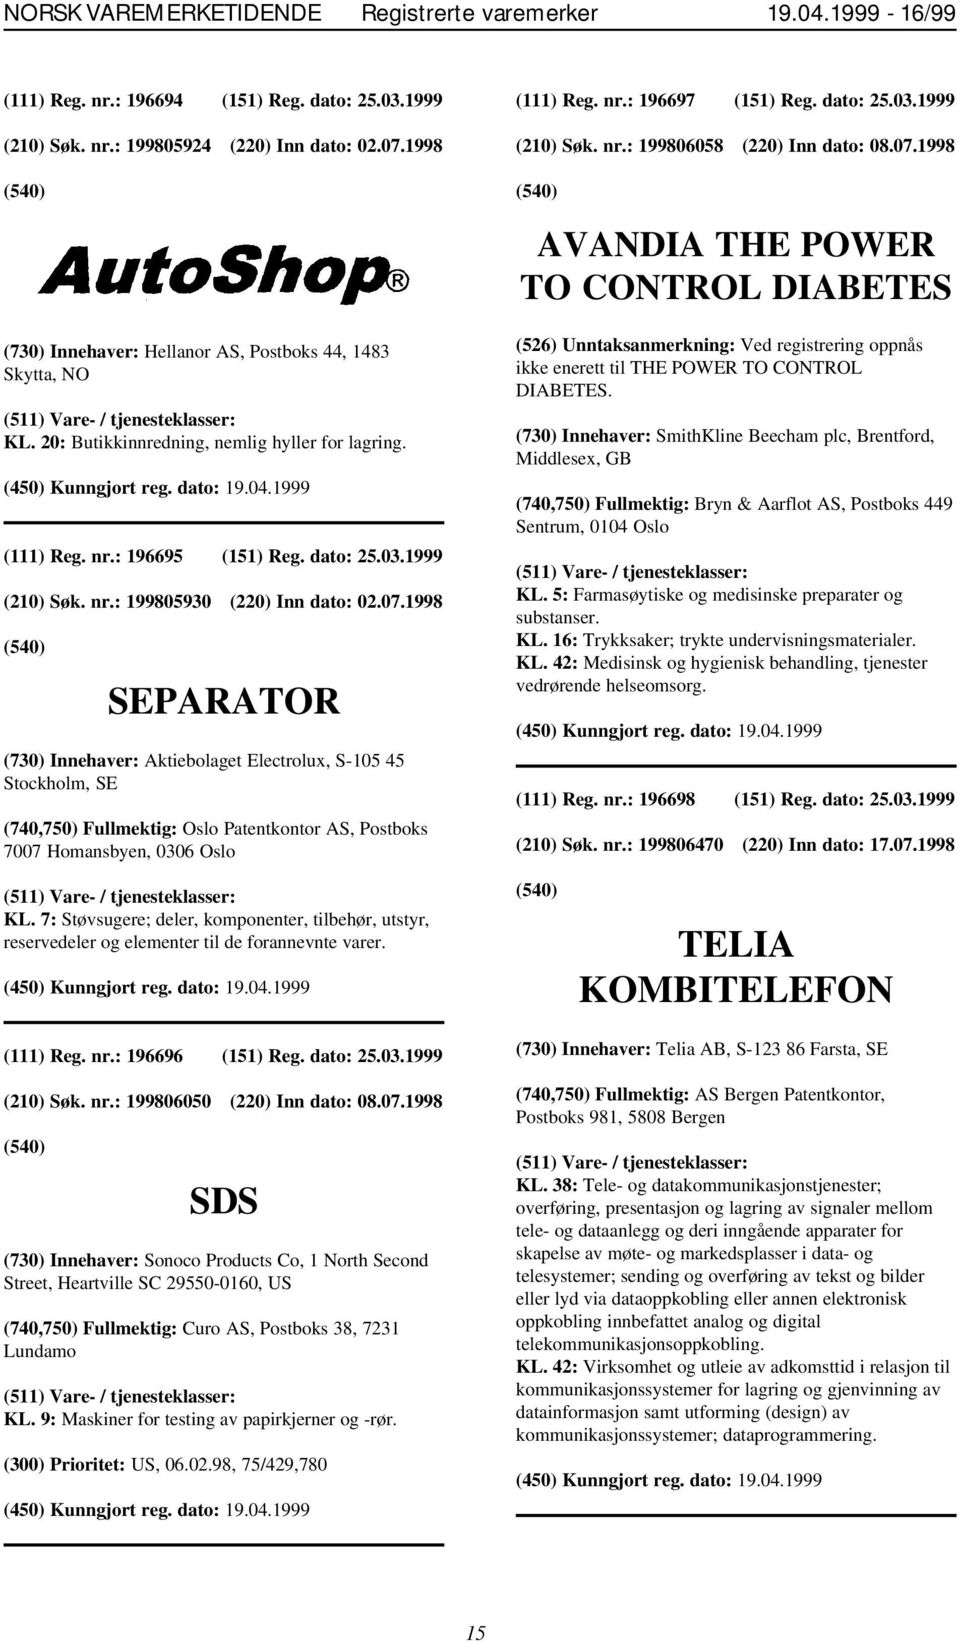 07.1998 SEPARATOR (730) Innehaver: Aktiebolaget Electrolux, S-105 45 Stockholm, SE (740,750) Fullmektig: Oslo Patentkontor AS, Postboks 7007 Homansbyen, 0306 Oslo (111) Reg. nr.: 196697 (151) Reg.